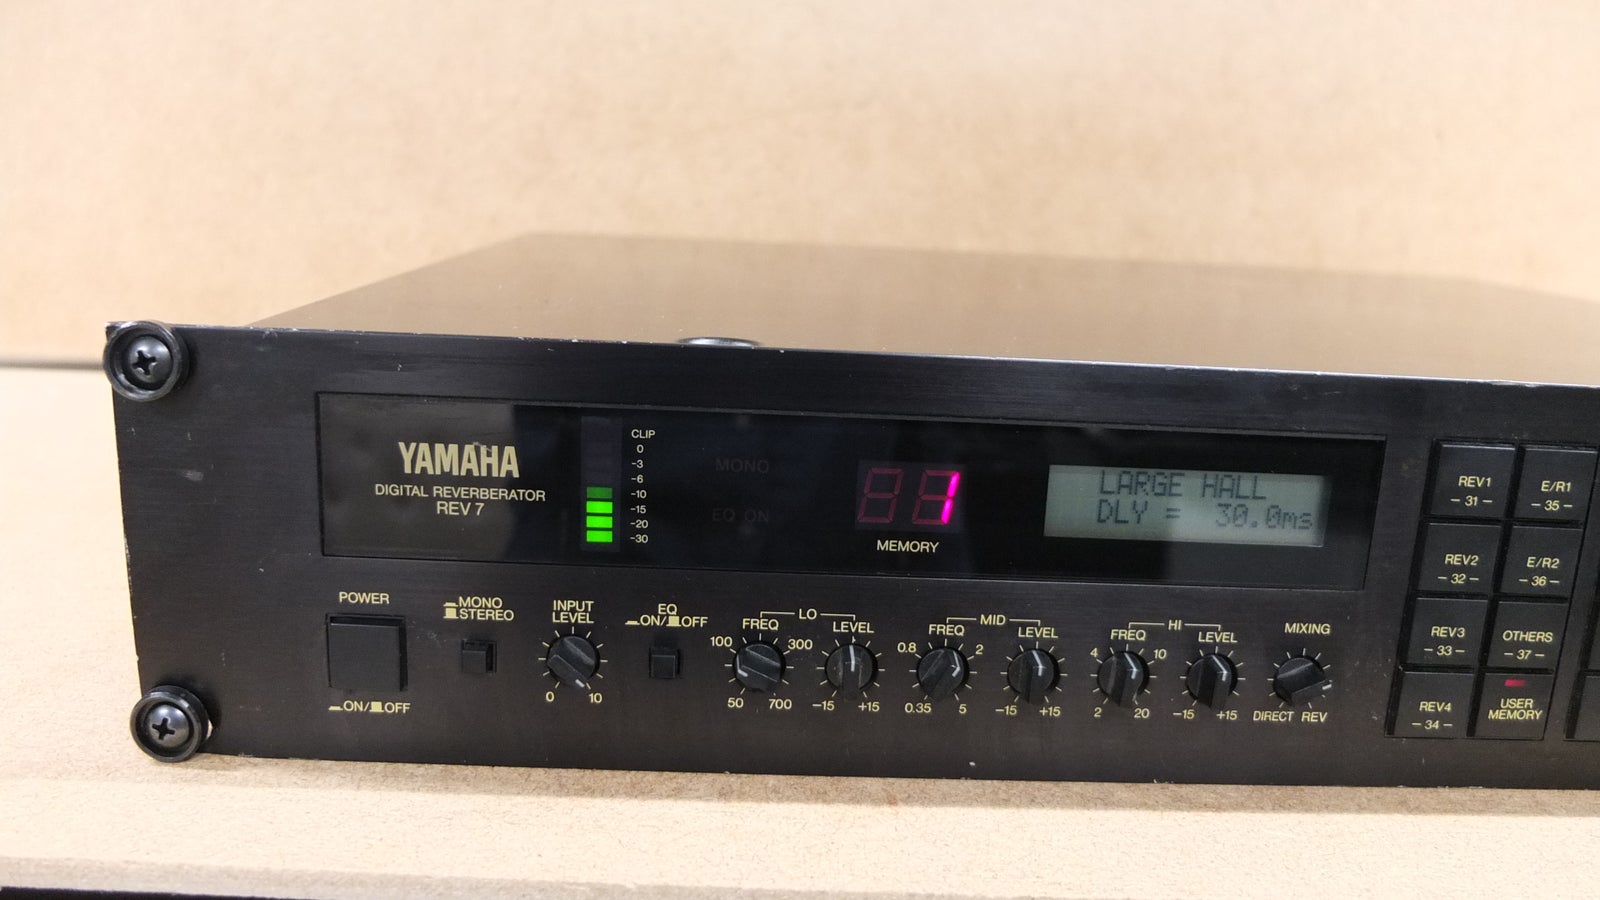 Digital reverb, Yamaha REV7